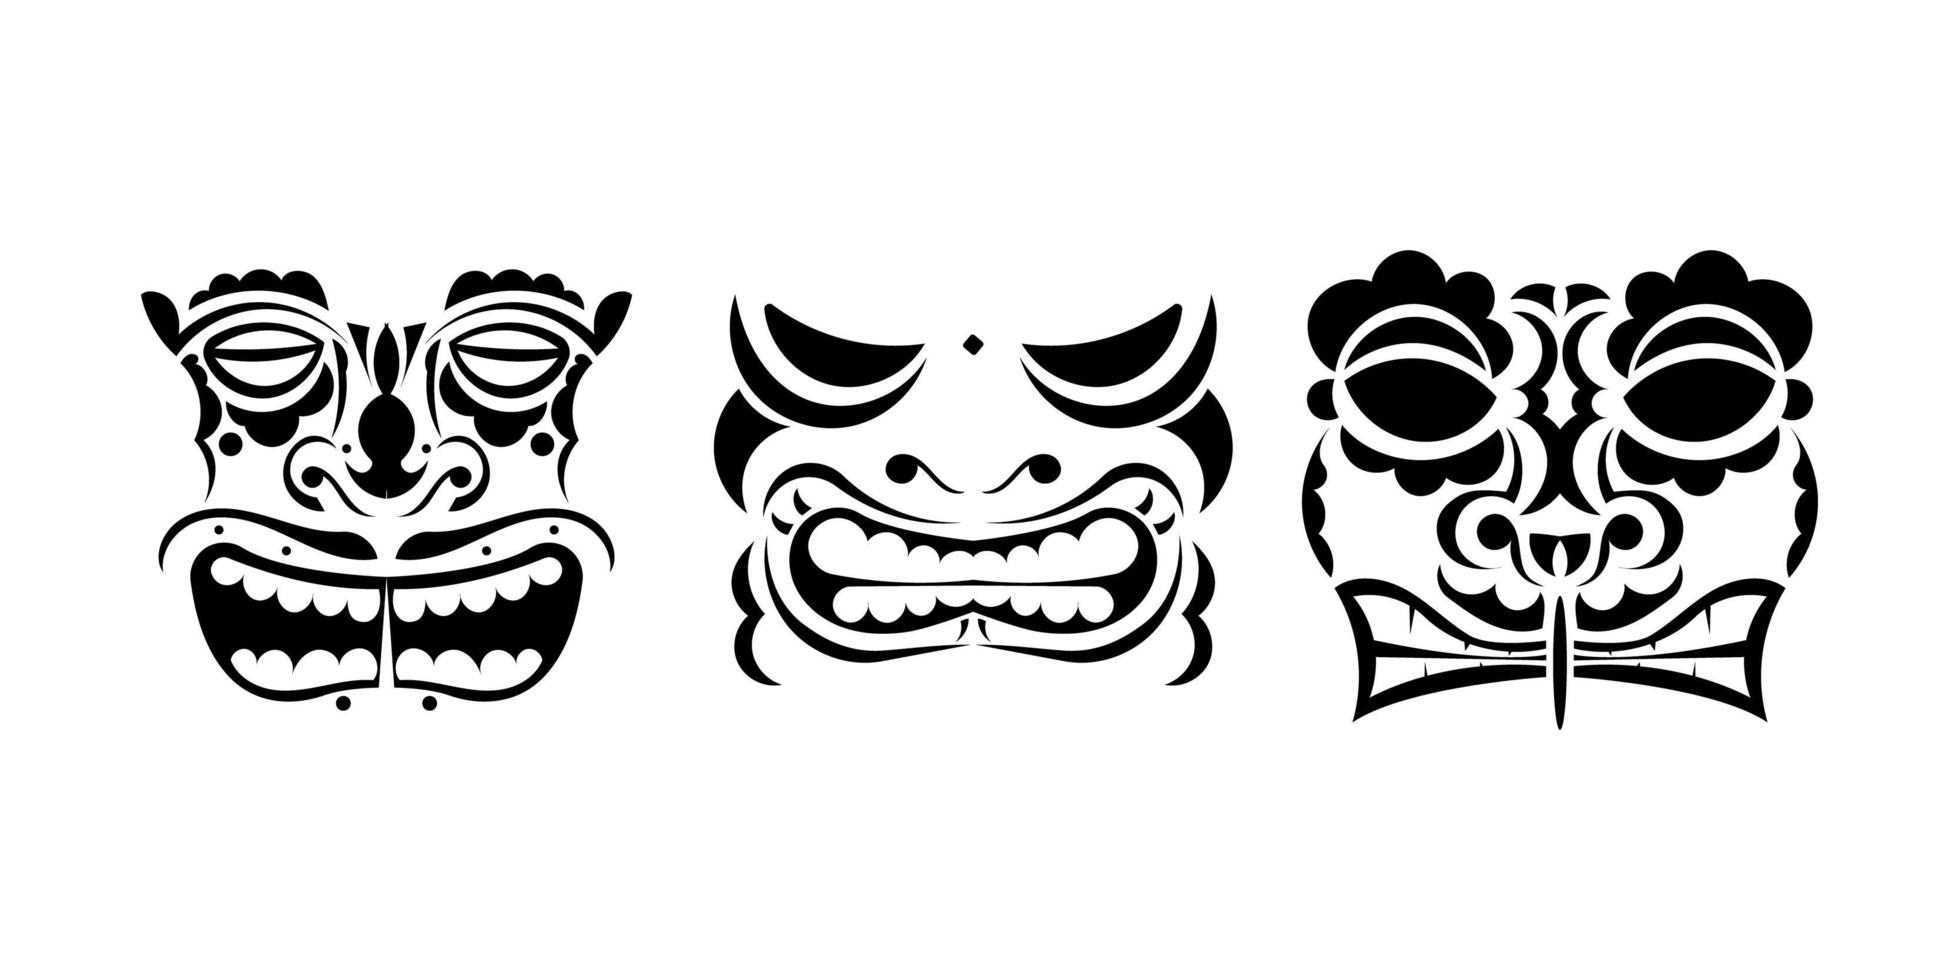 conjunto de caras de tatuajes o máscaras en estilo ornamental. patrones tribales polinesios, maoríes o hawaianos. ilustración vectorial aislado. vector